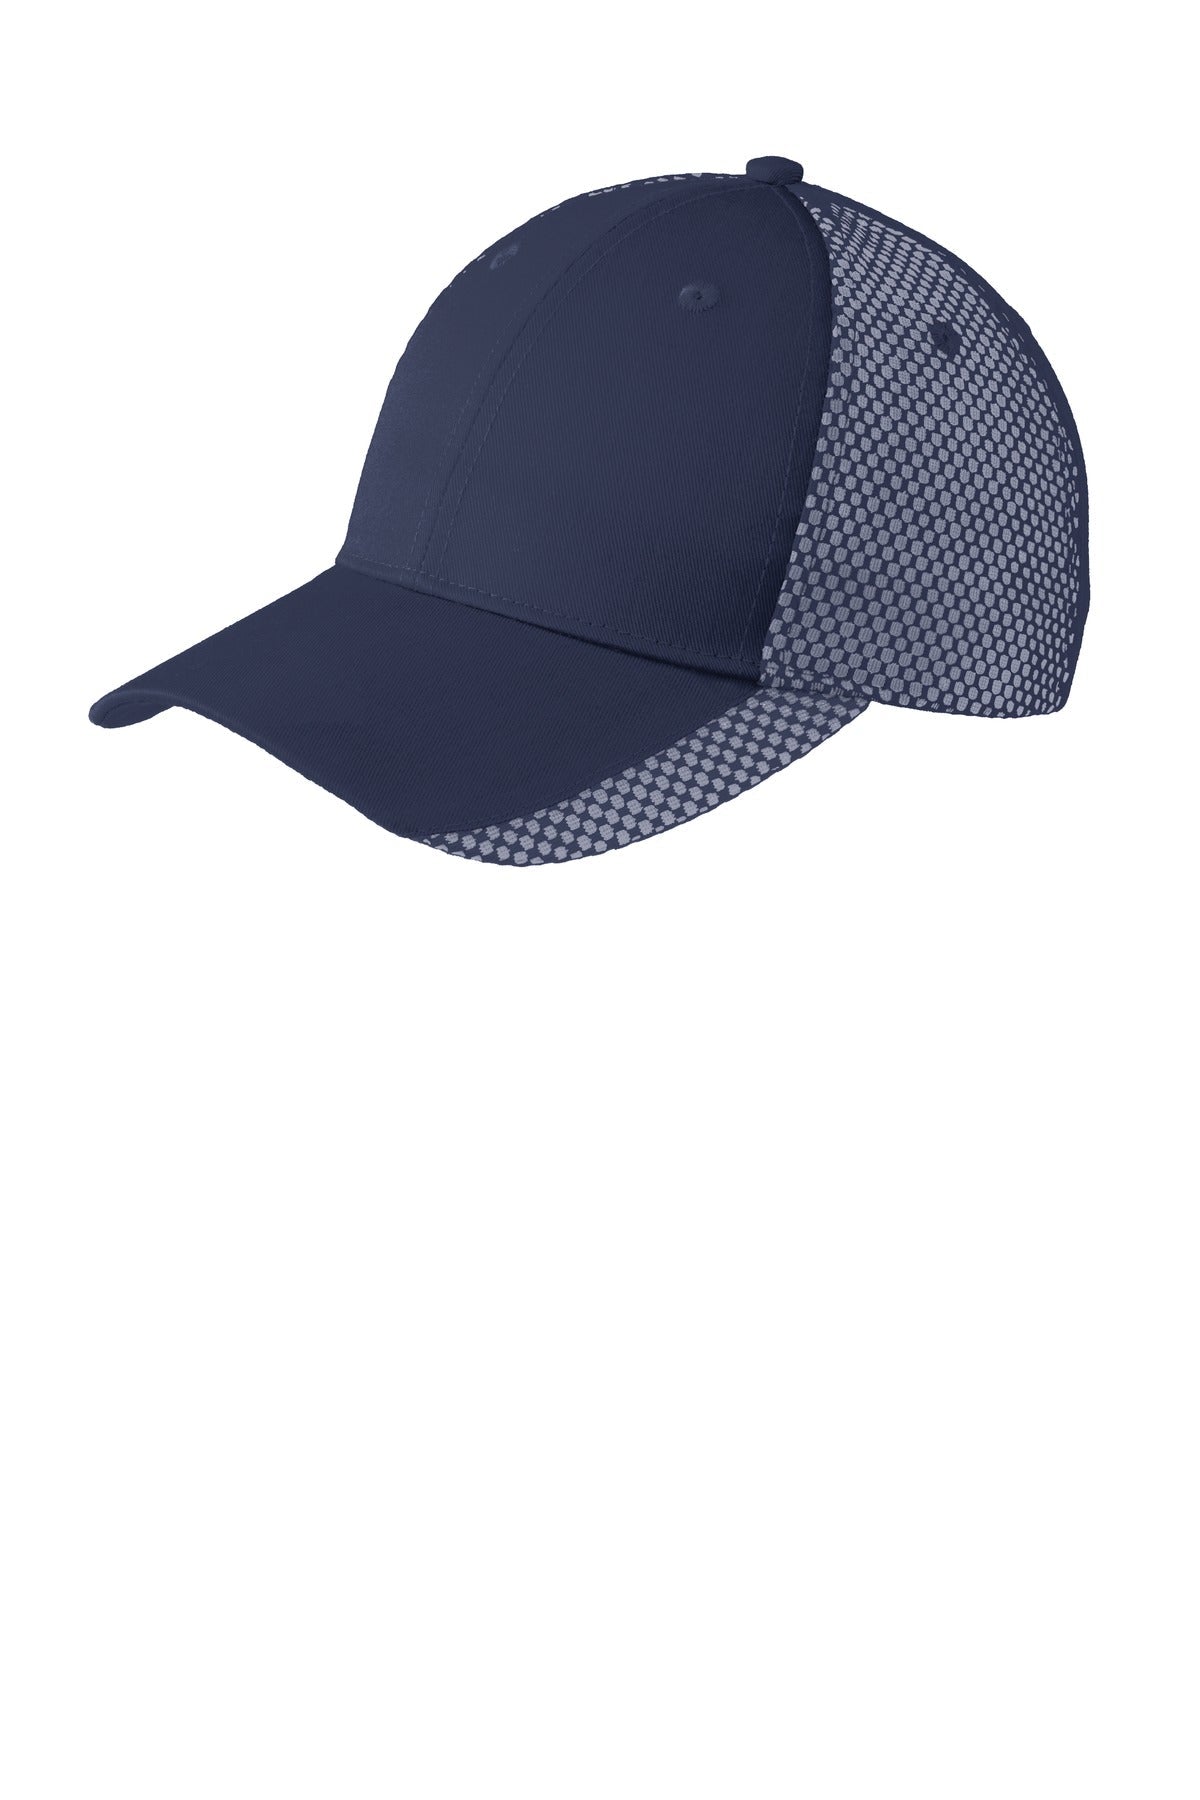 Port Authority® Two-Color Mesh Back Cap. C923 - DFW Impression